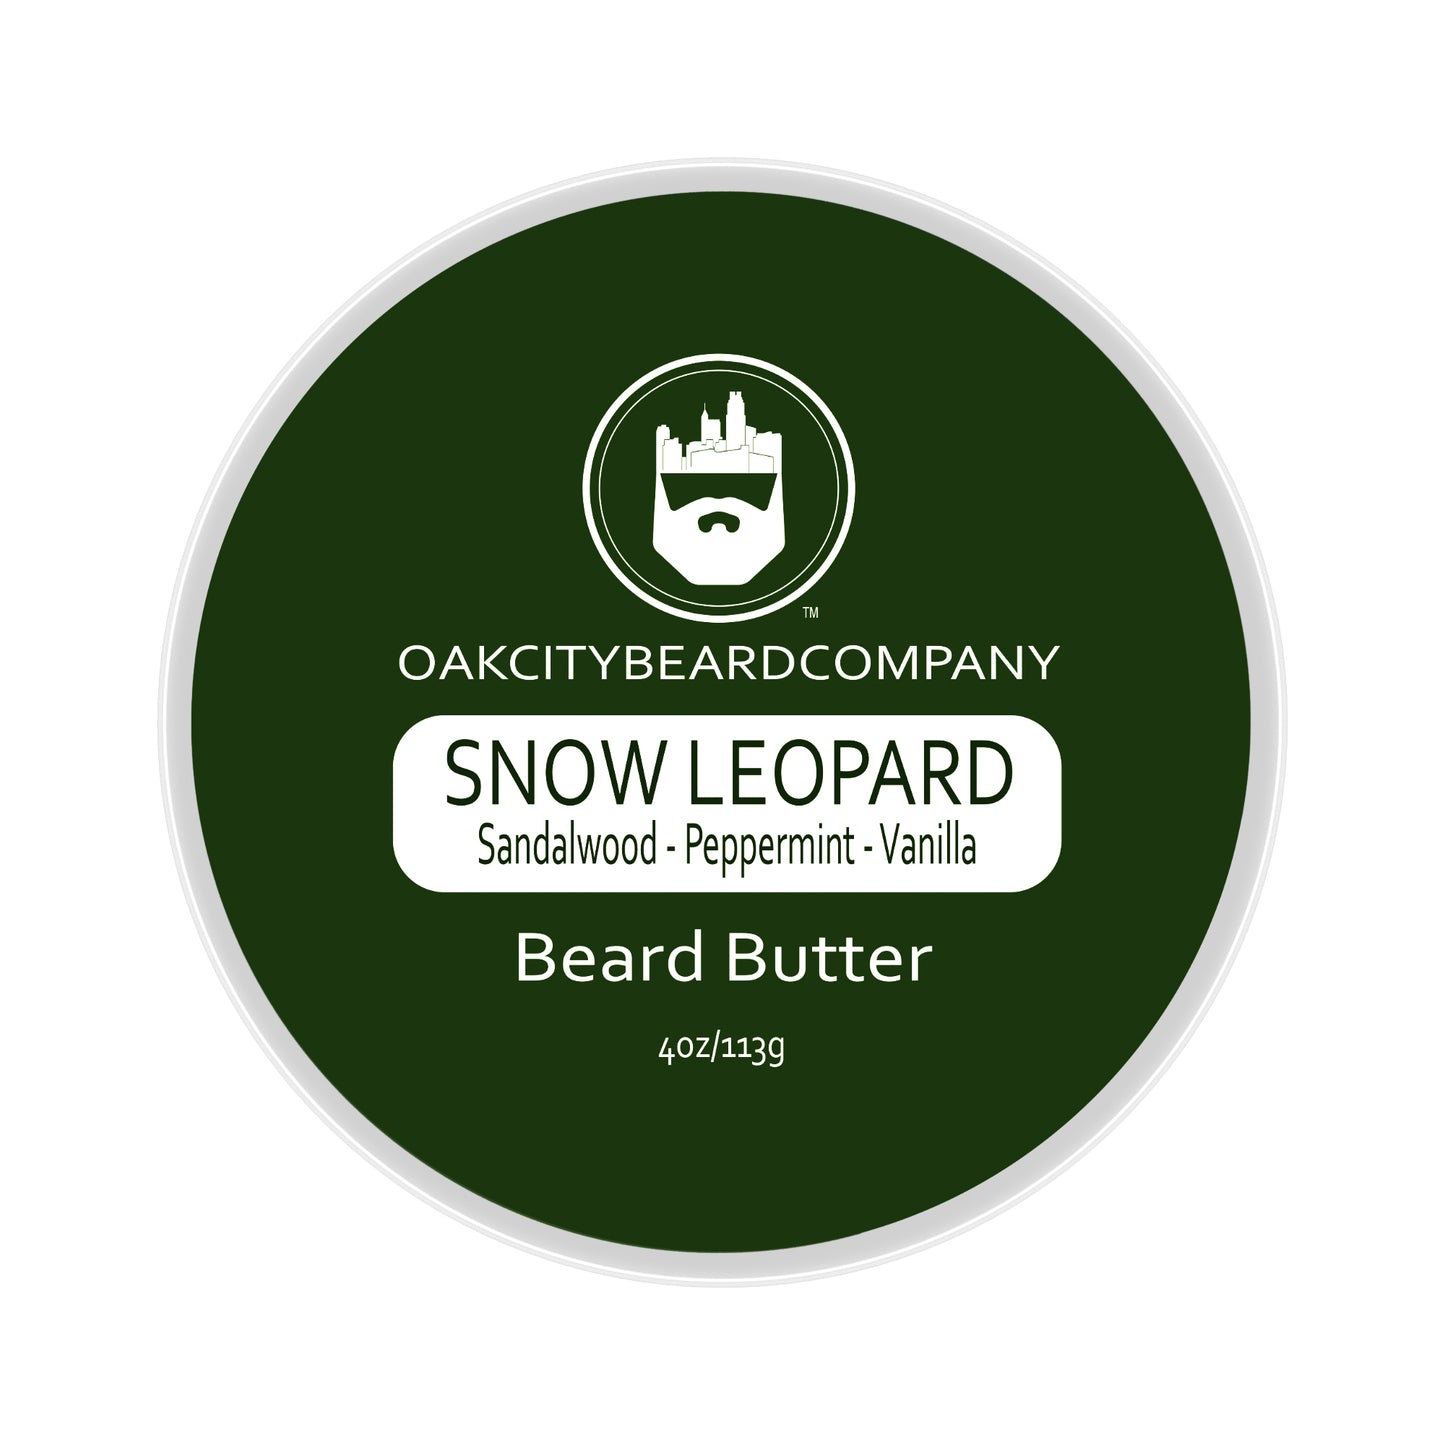 Snow Leopard (Beard Butter) by Oak City Beard Company